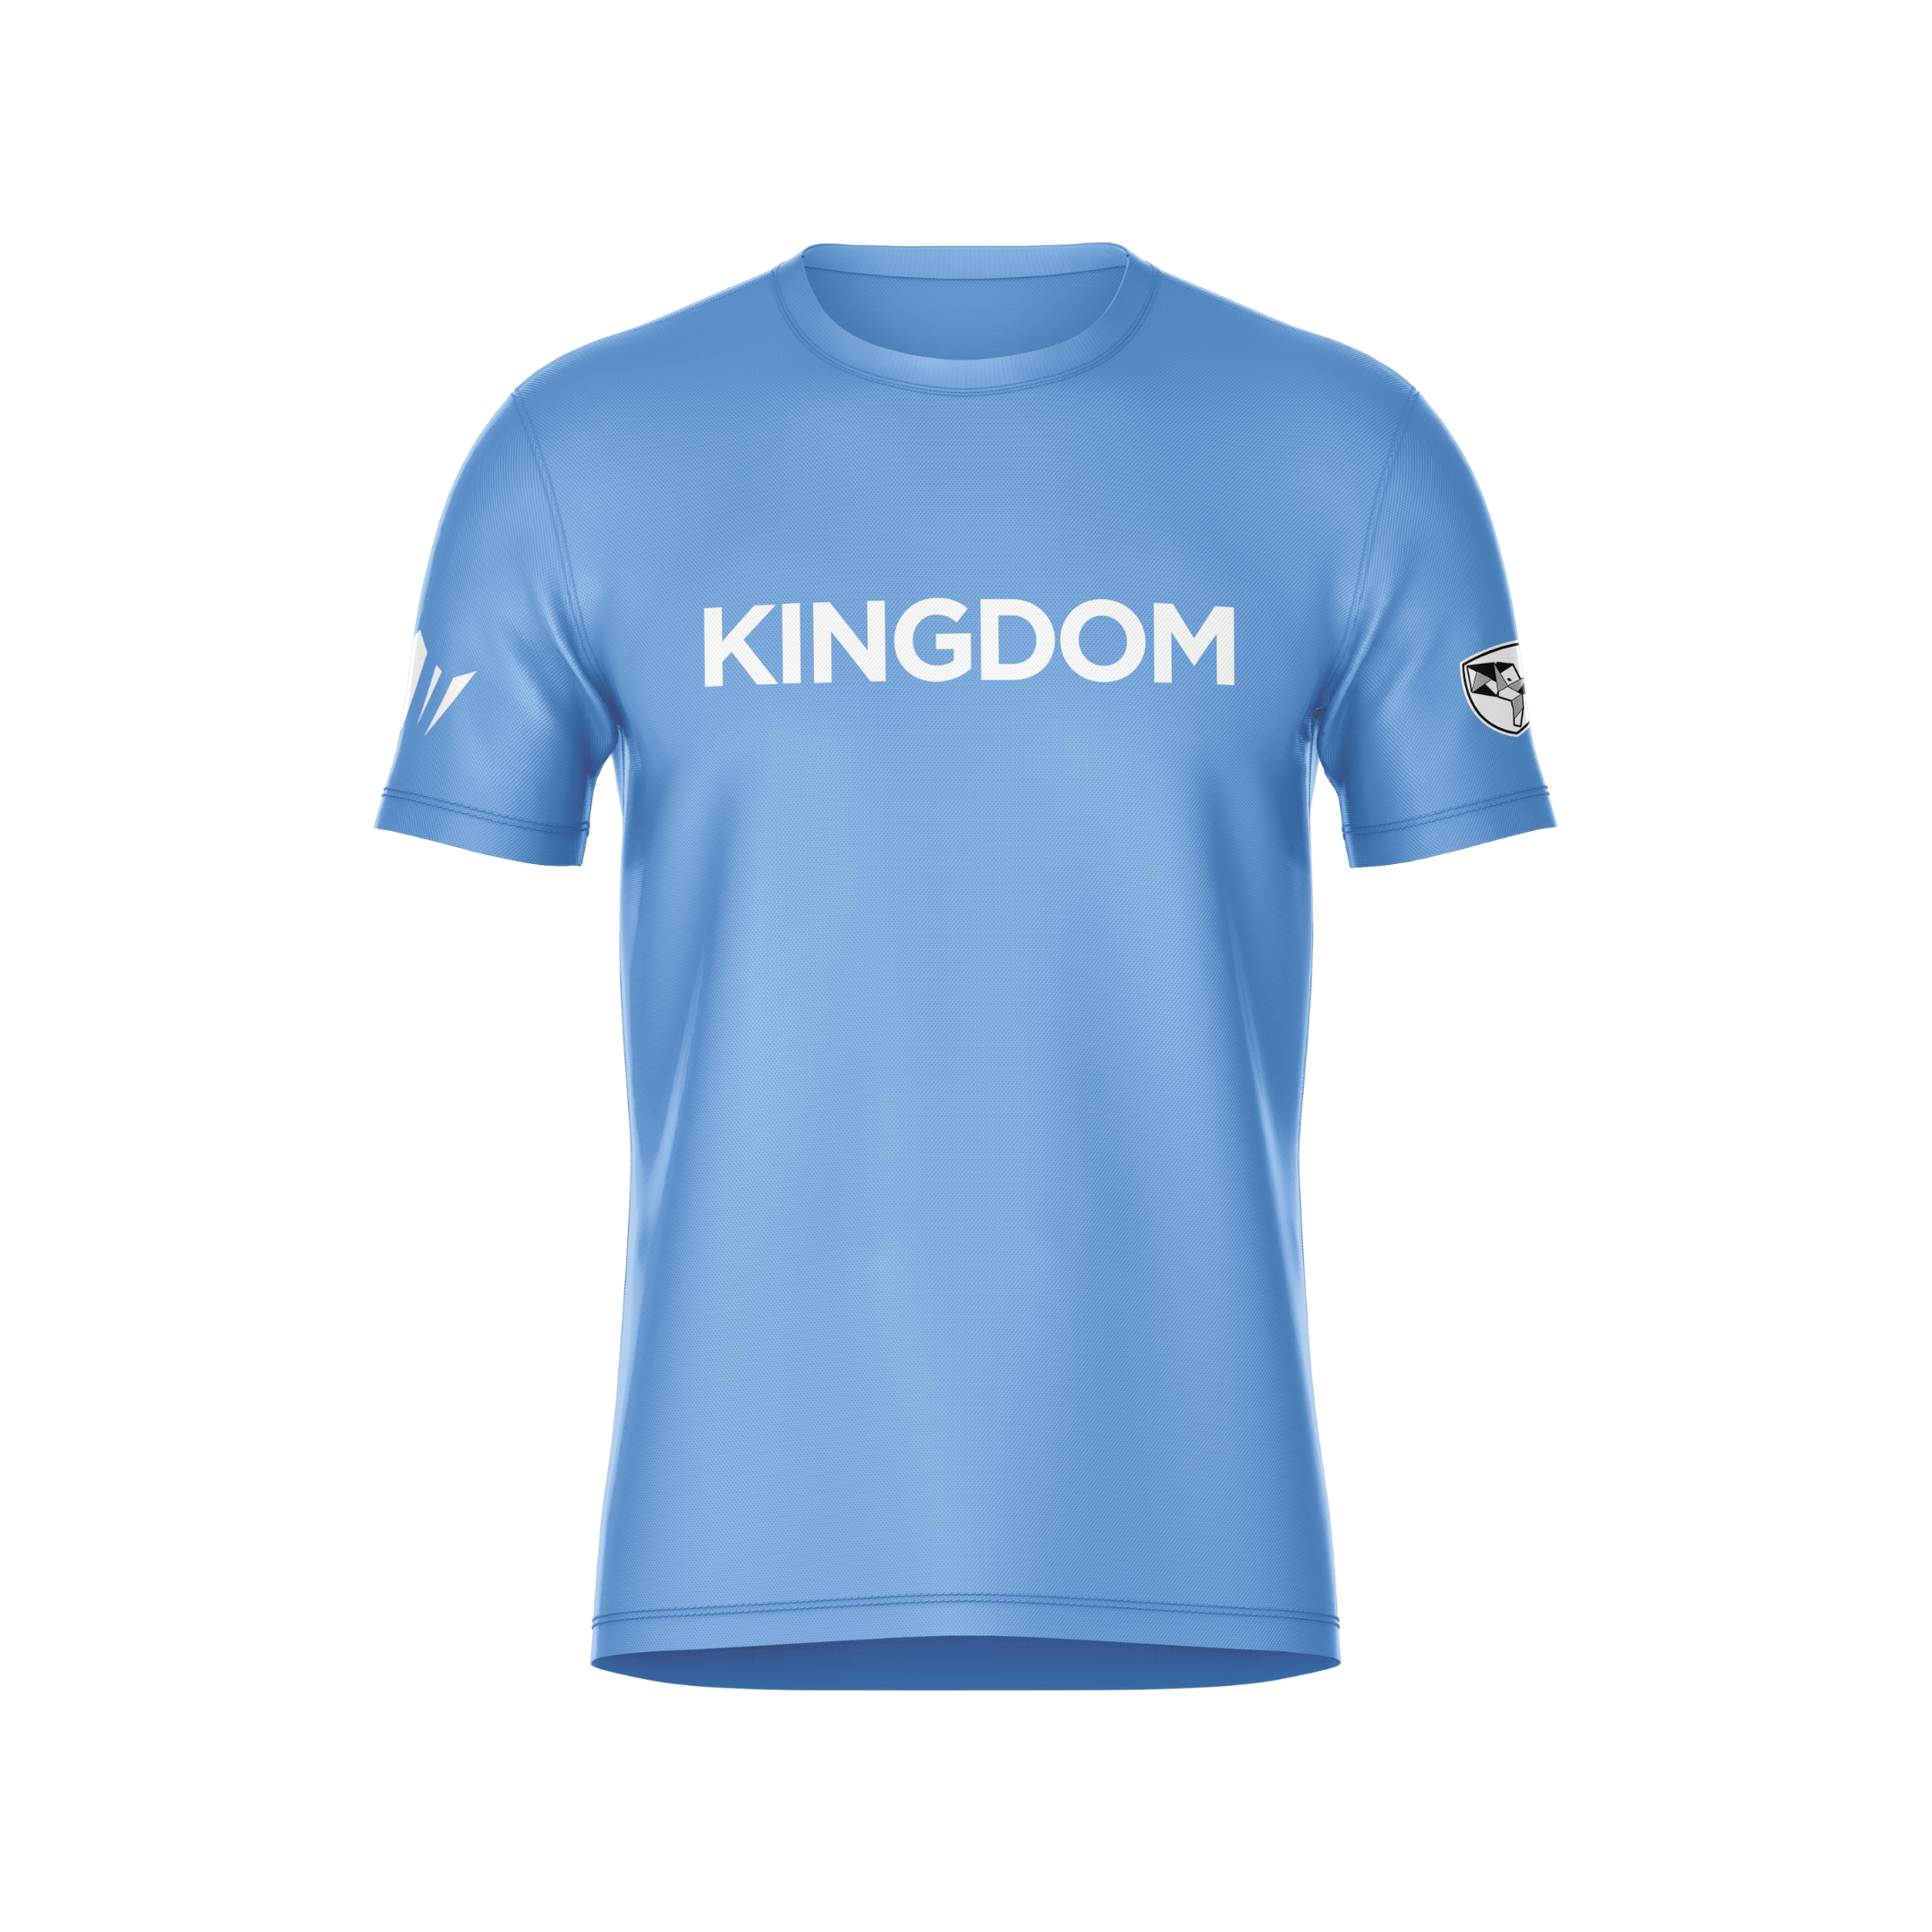 Kingdom Tee - Blue